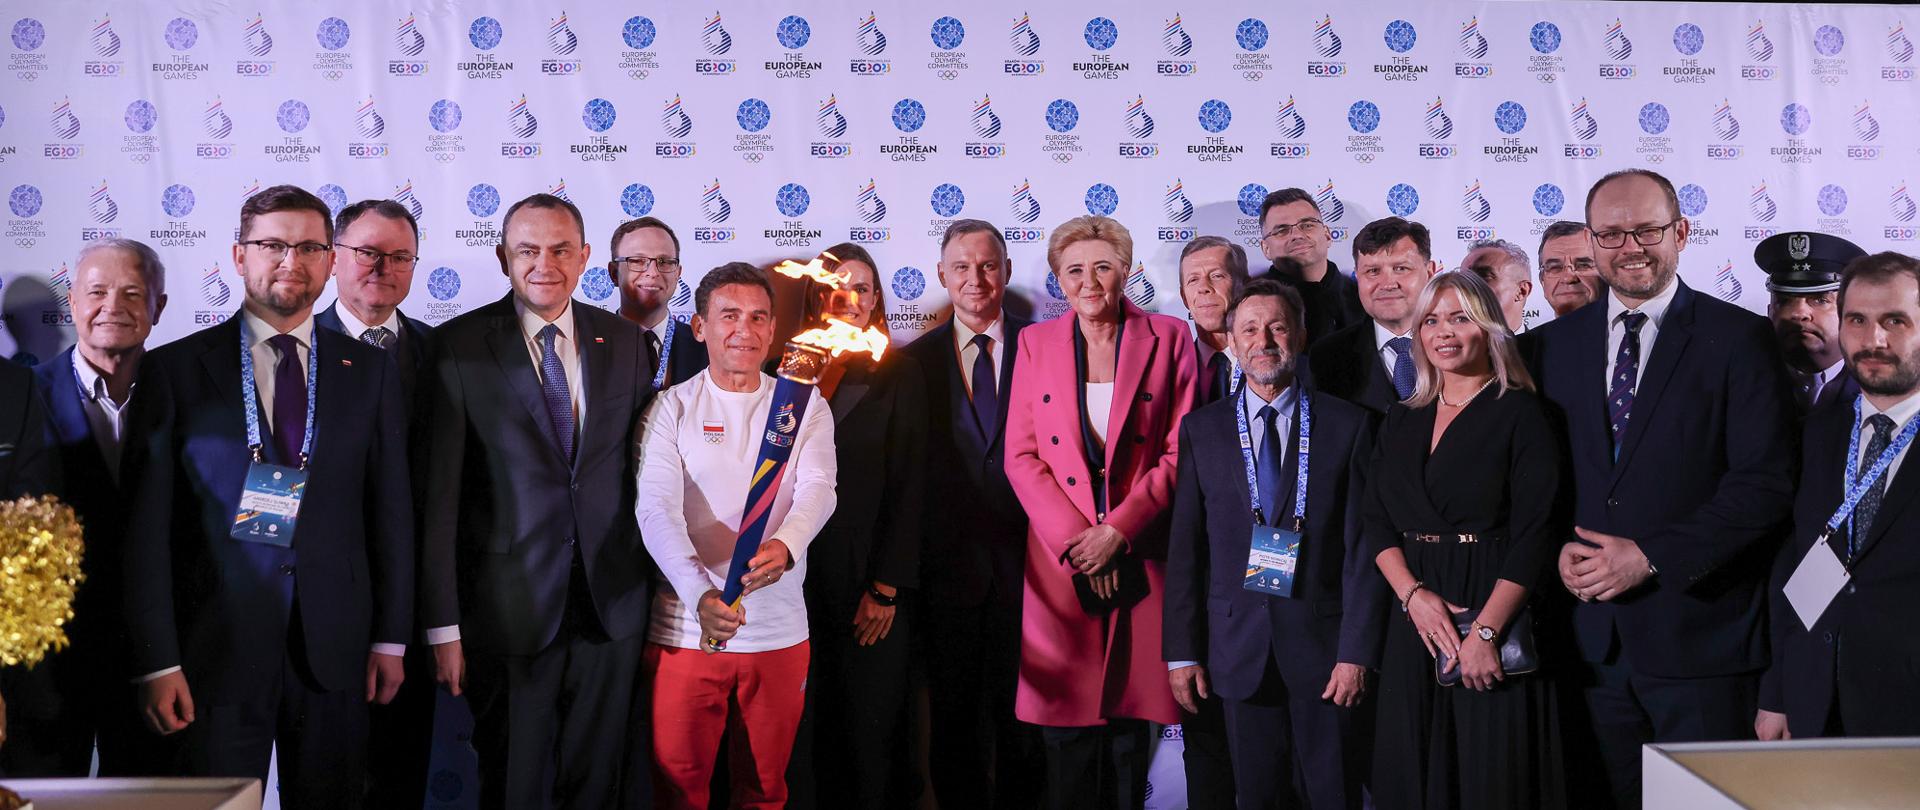 Polska delegacja podczas uroczystości przekazania Ognia Pokoju. 